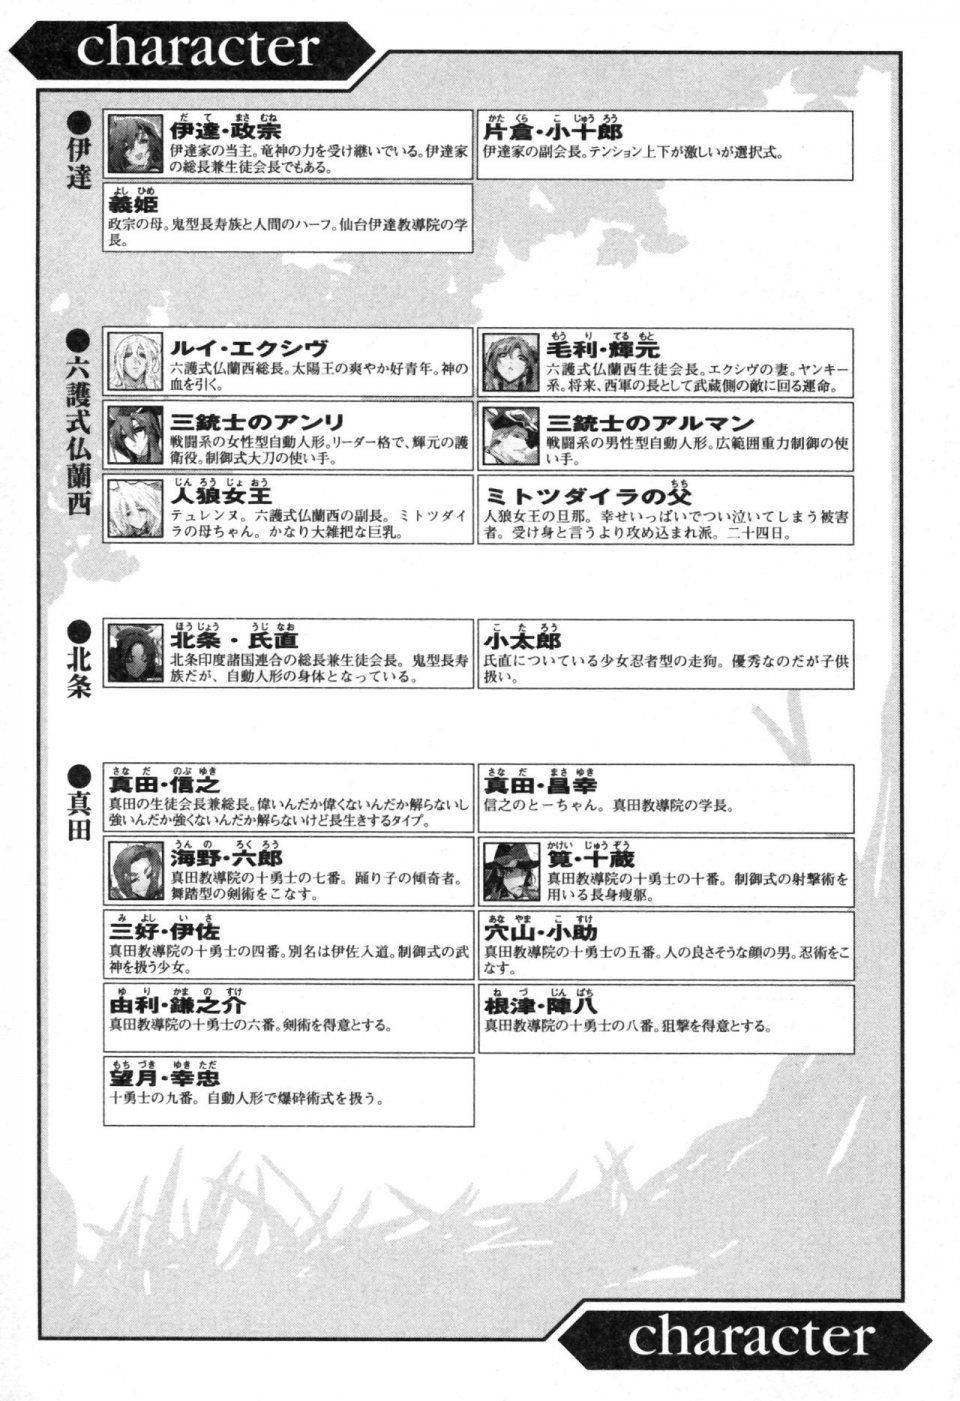 Kyoukai Senjou no Horizon LN Vol 13(6A) - Photo #12